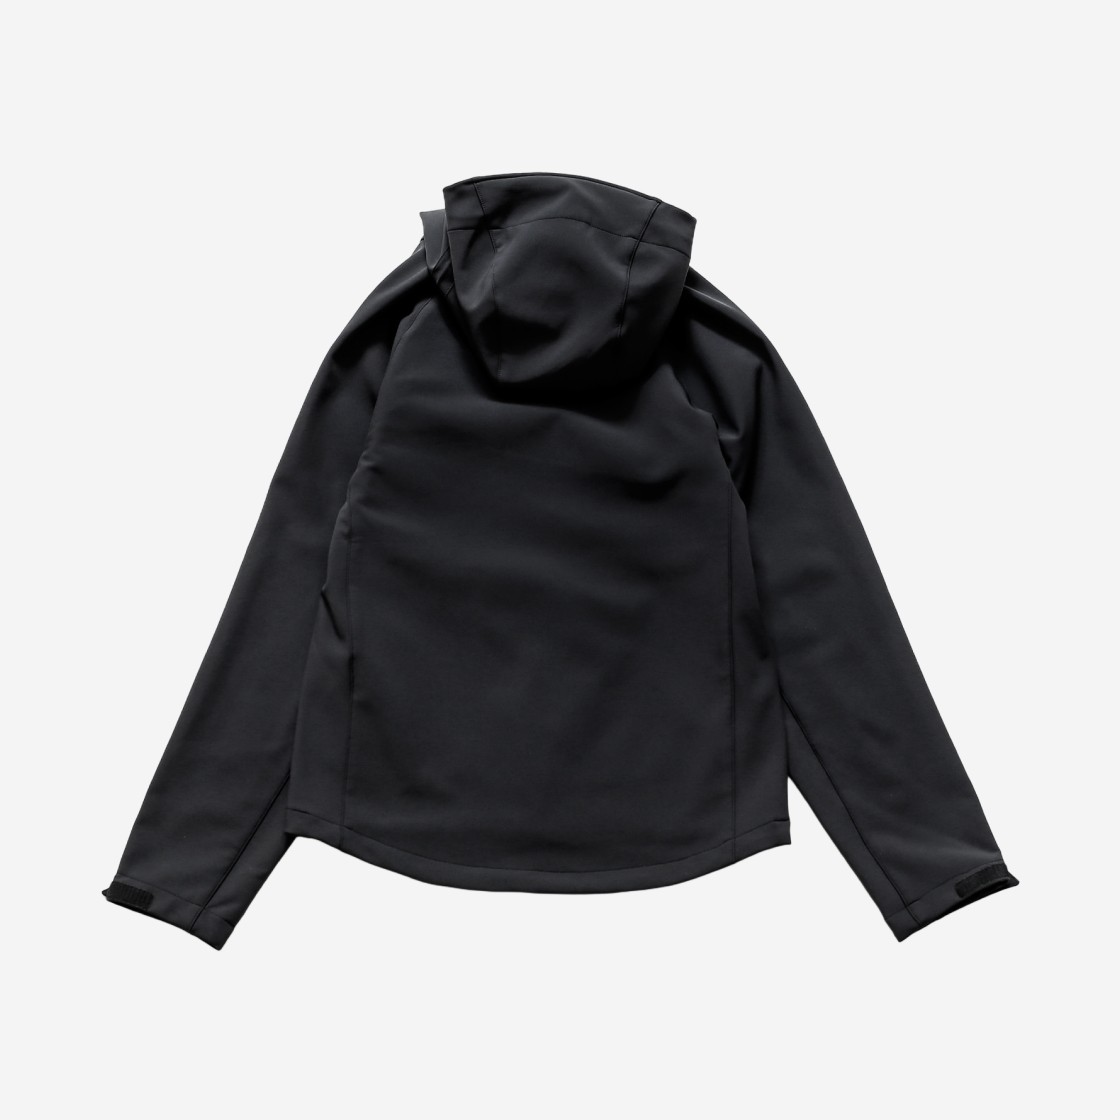 Cayl Light Shield Jacket 2 - Black